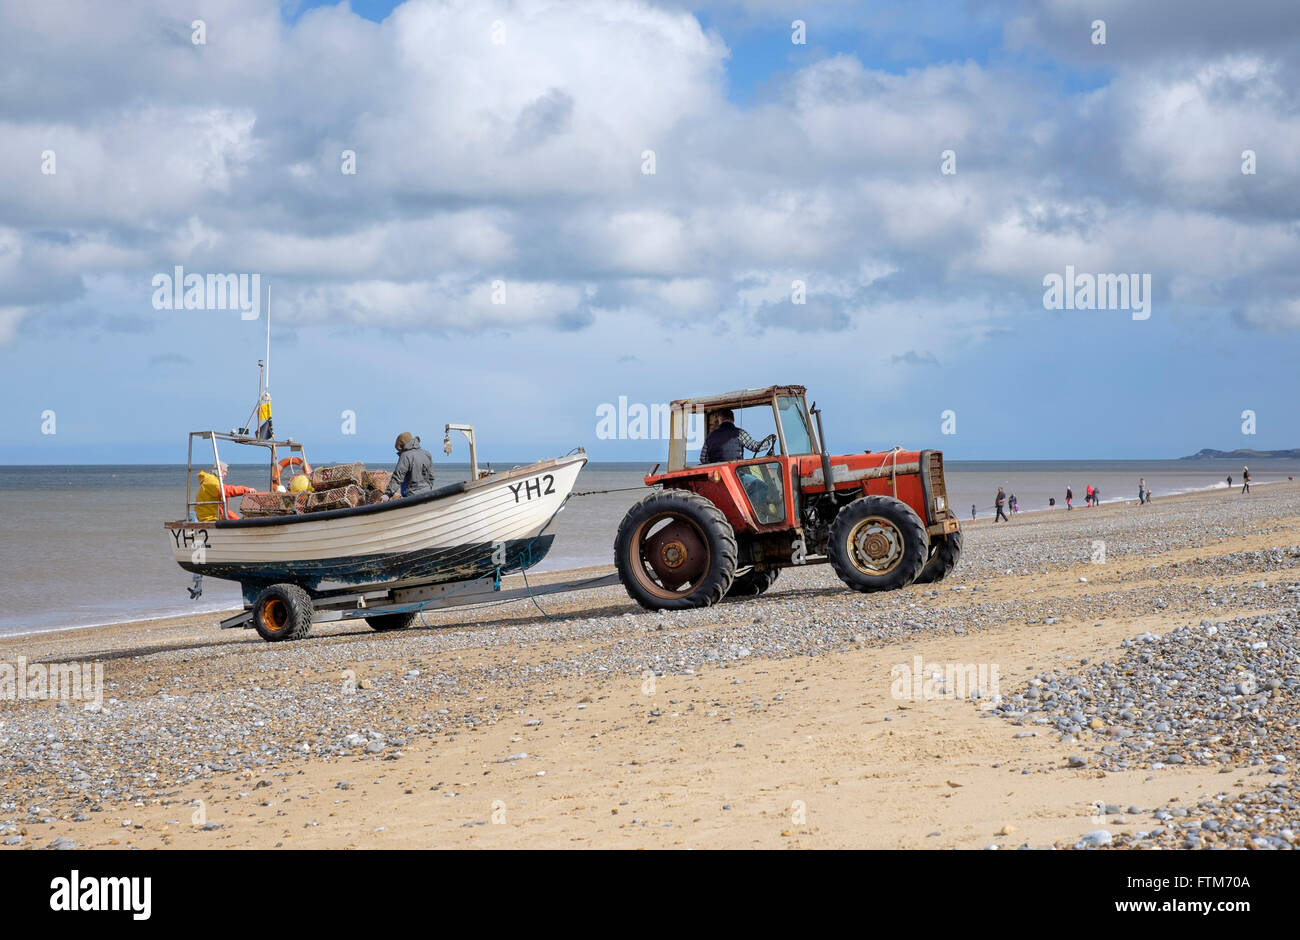 Il trattore lanciando un granchio/aragosta barca da pesca per andare per la pesca costiera vicino a Cley accanto al mare, Norfolk, Inghilterra, Regno Unito Foto Stock